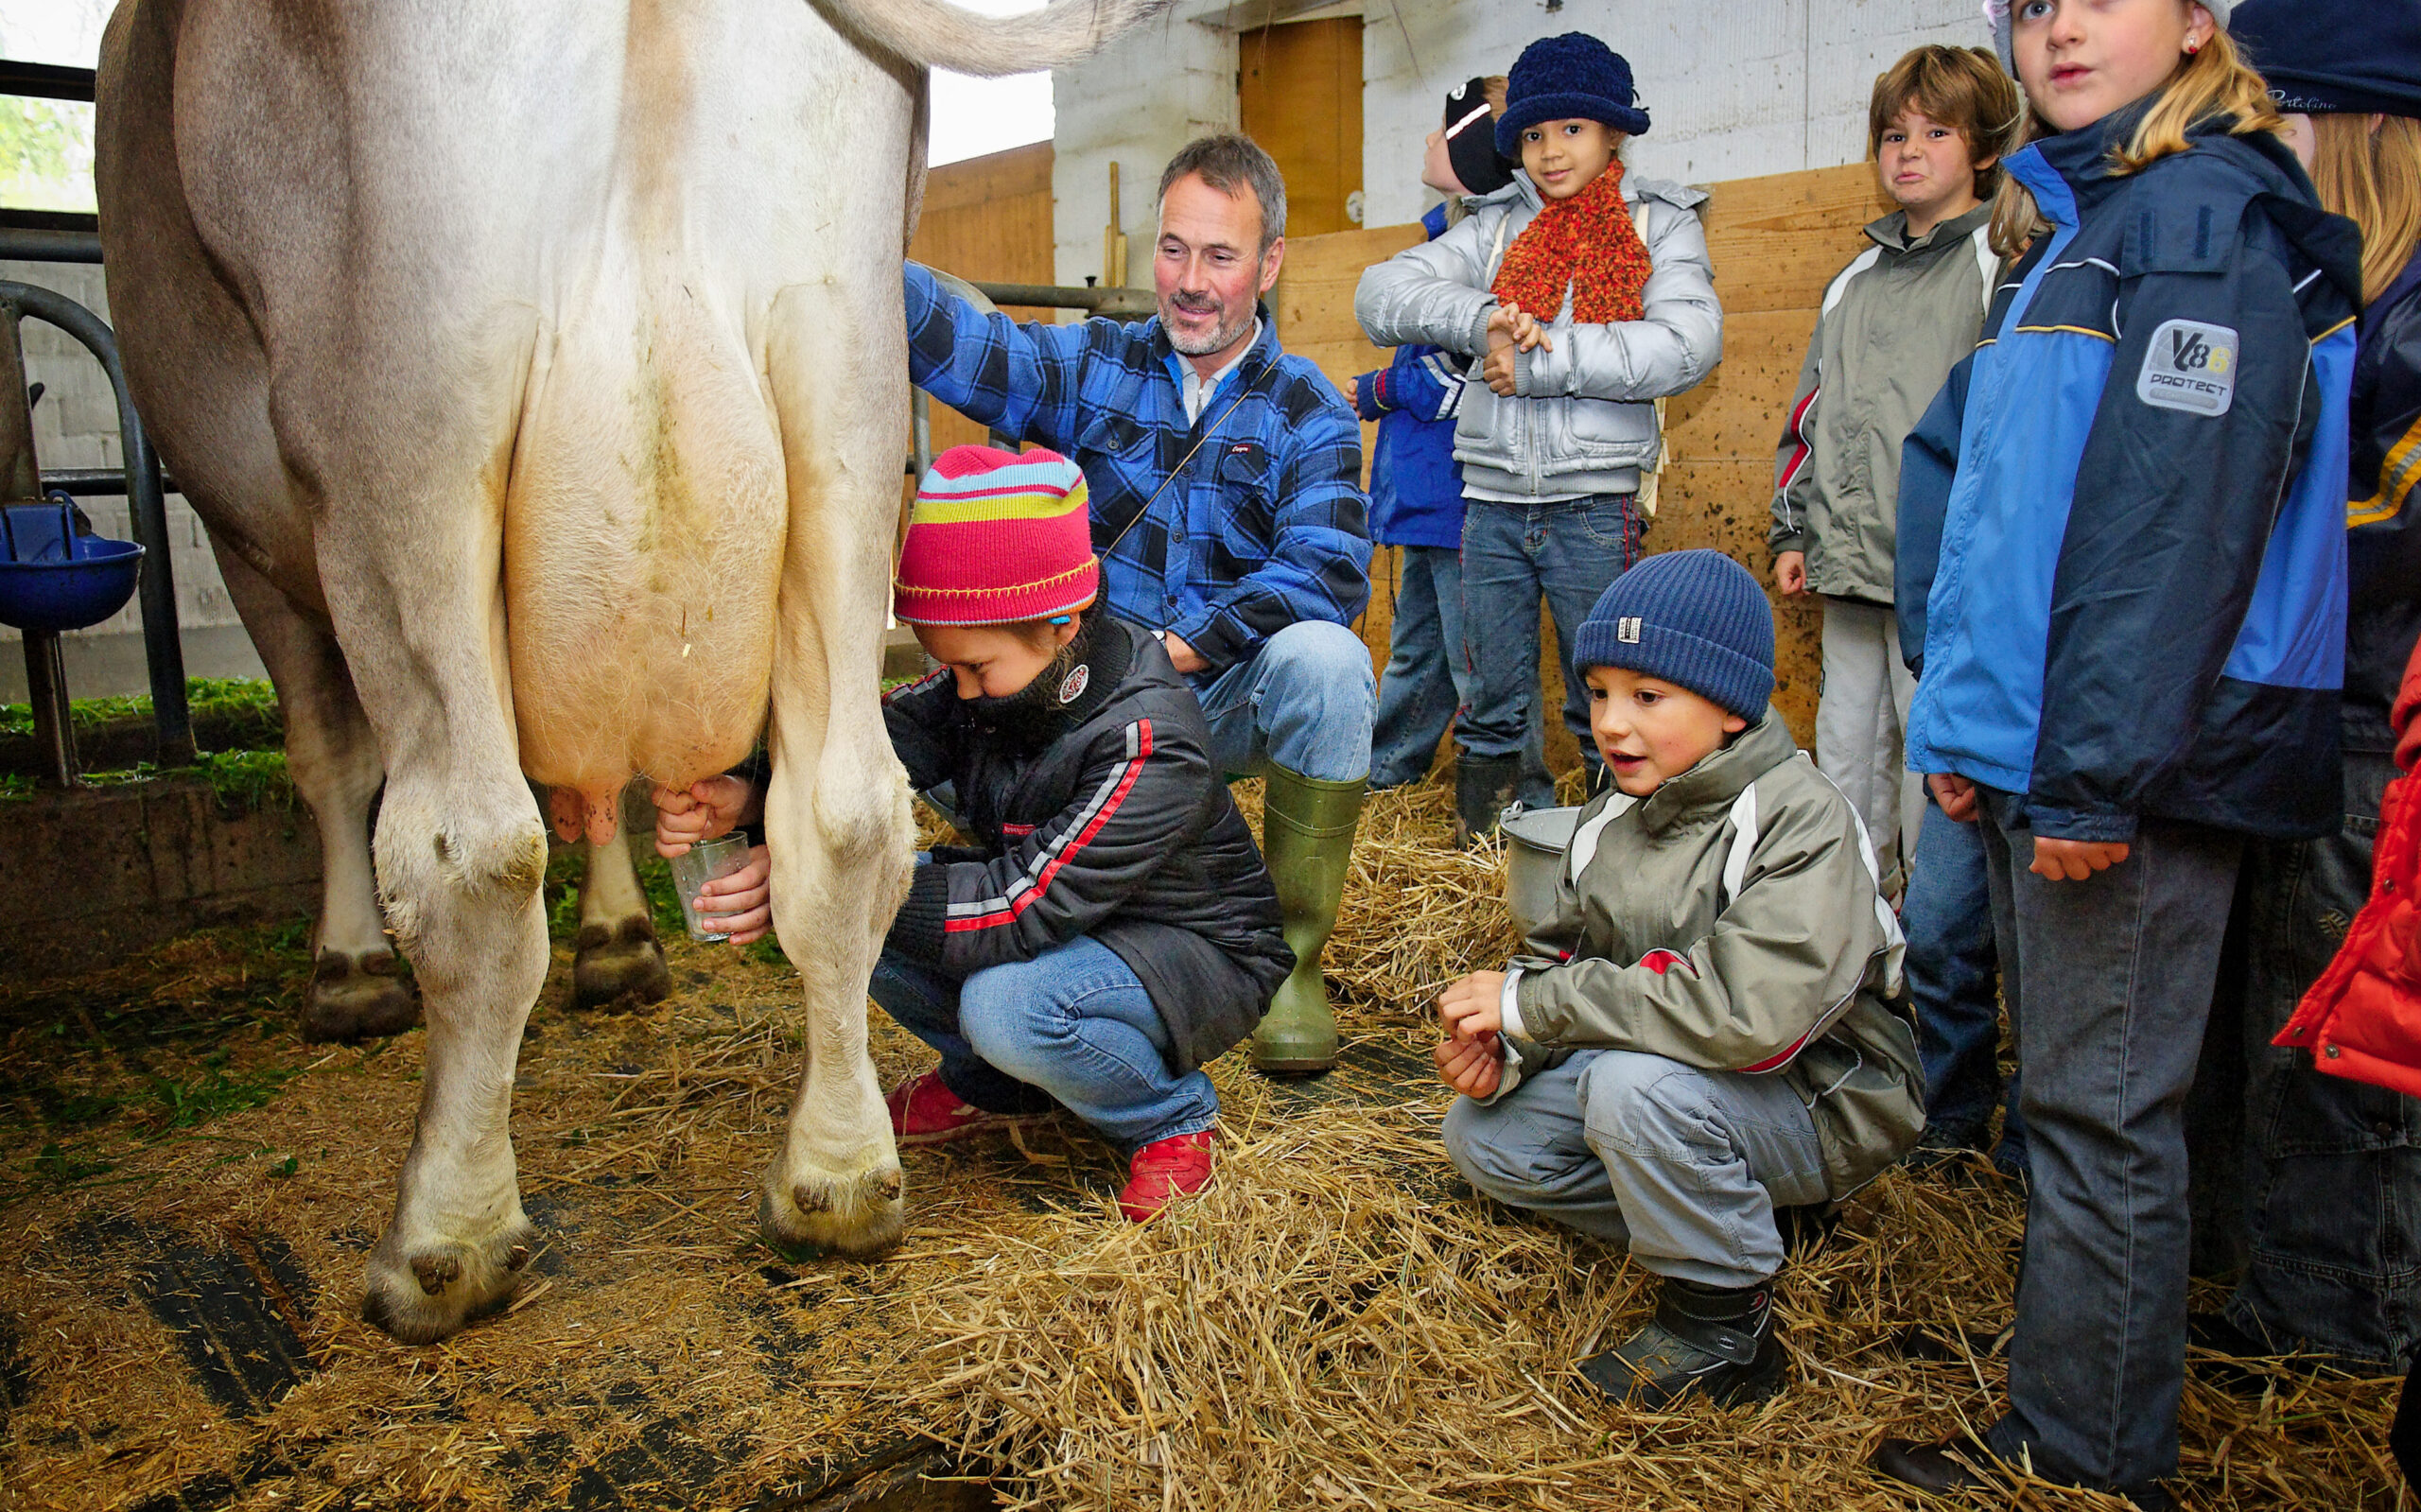 Kinder sehen woher die Milch kommt, Kinder im Stall bei einer Kuh mit dem Bauern